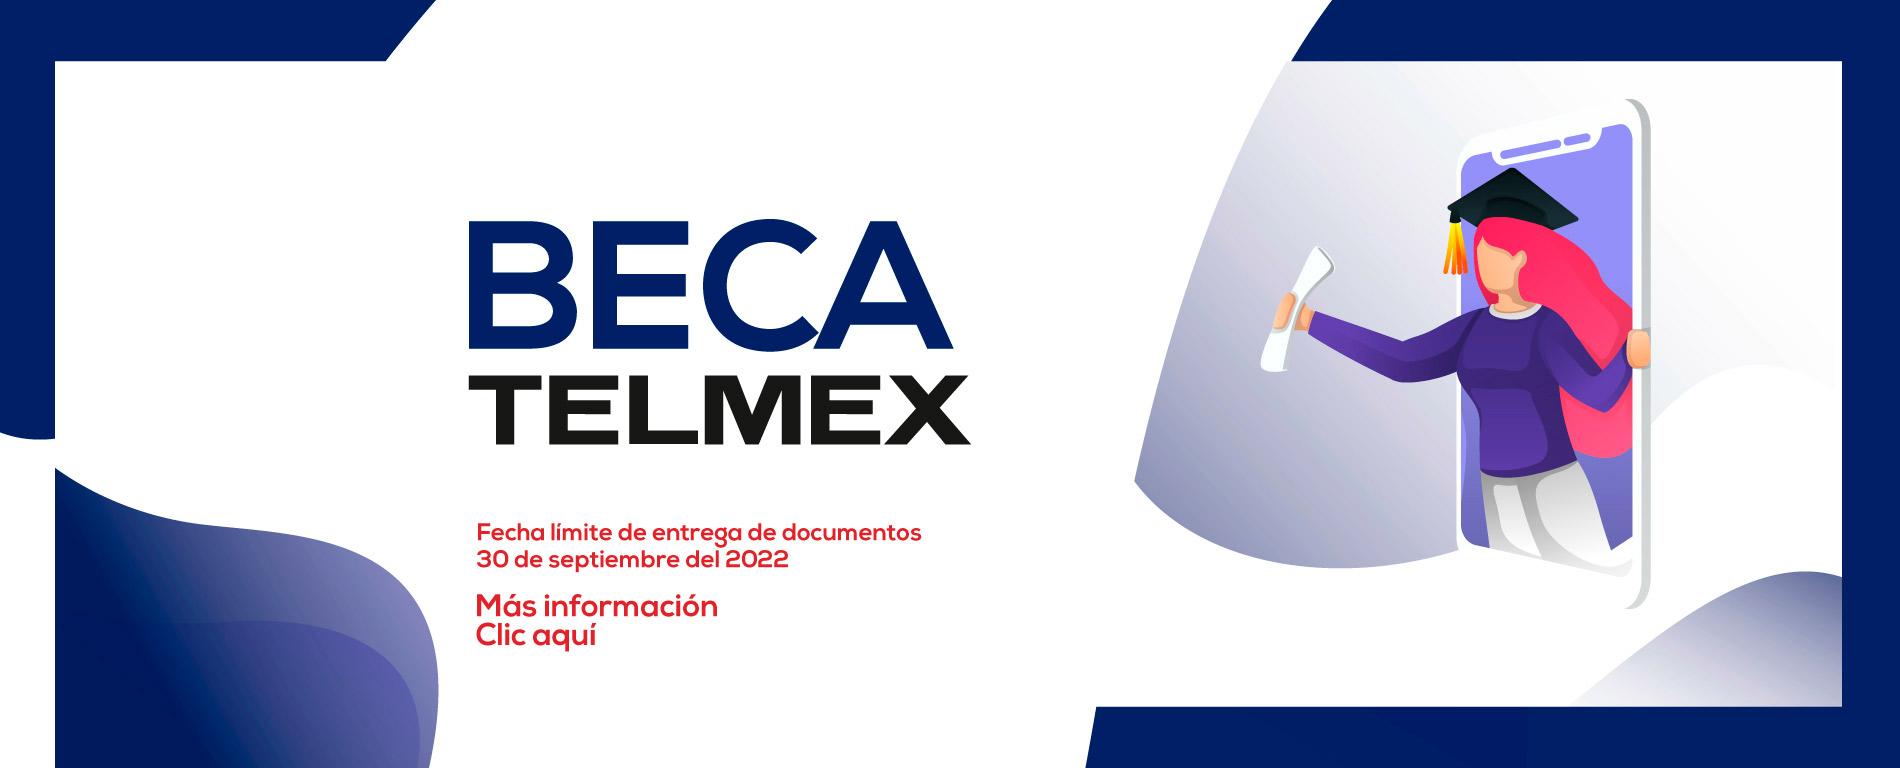 Beca Telmex UO Poza Rica